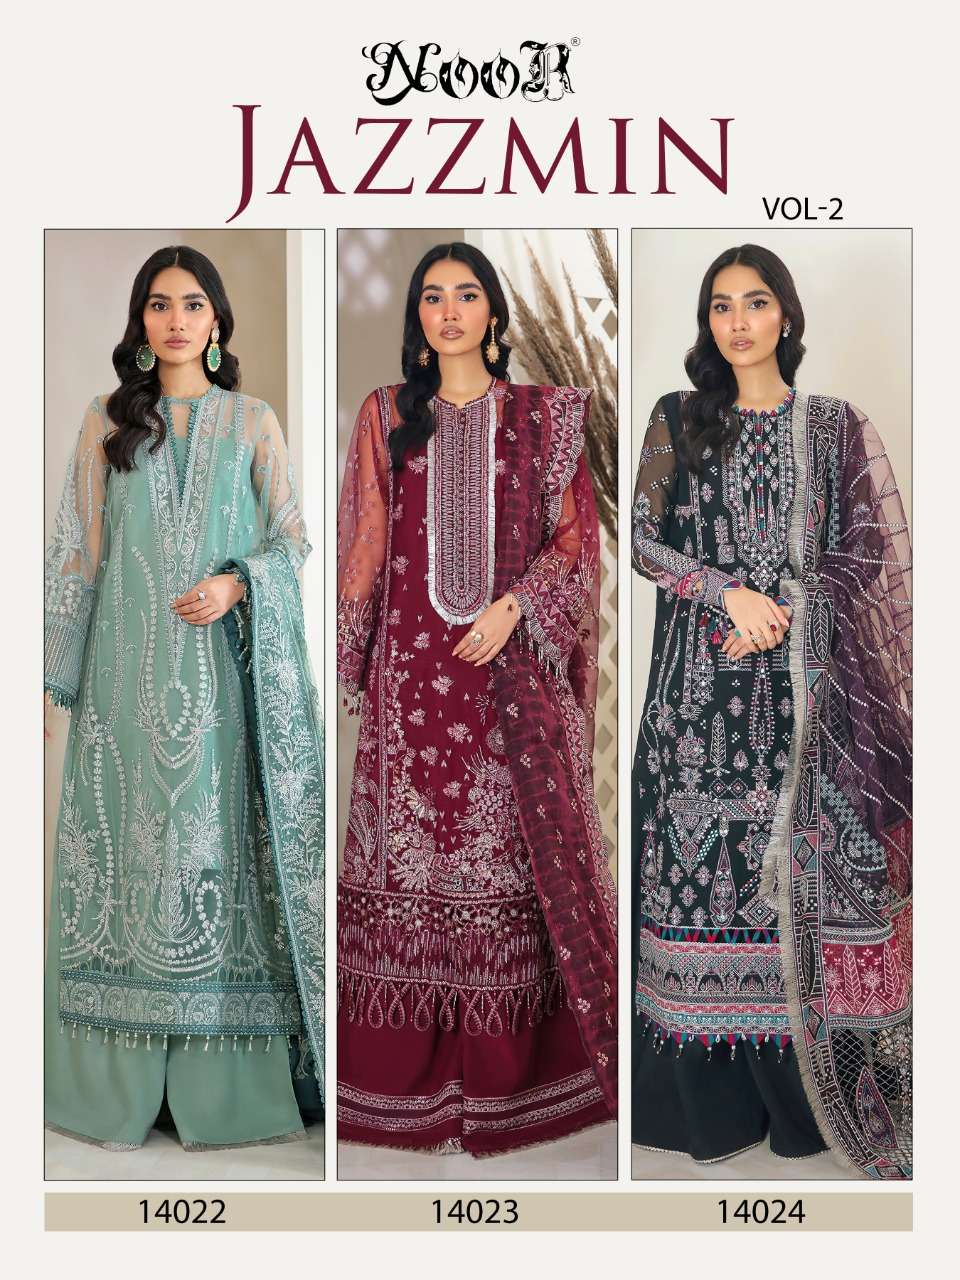 noor jazzmin vol 2 pakistani salwar kameex online wholesale price surat